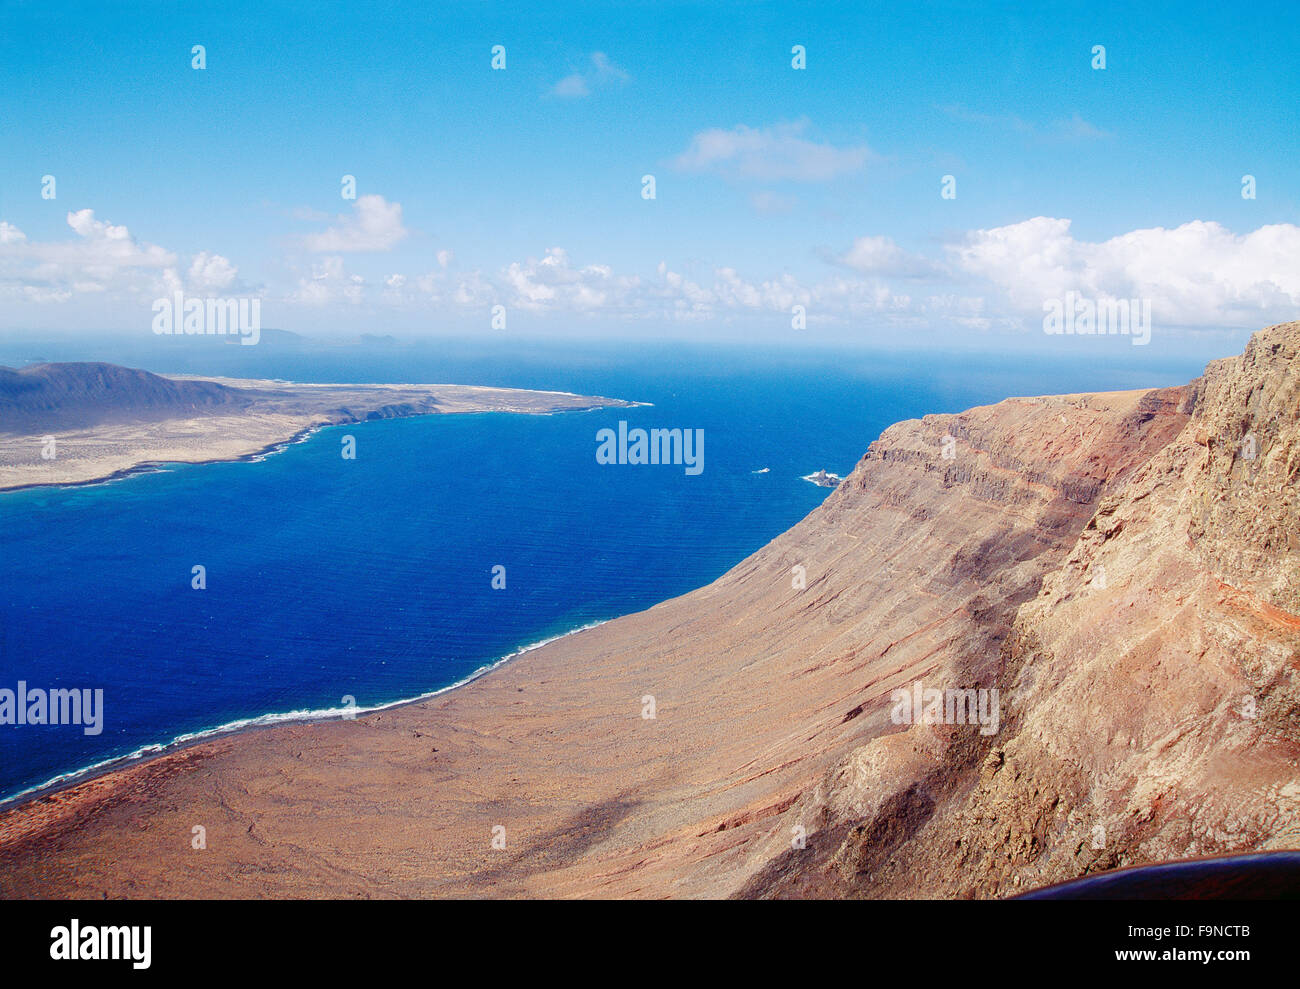 El Rio and Chinijo archipelago. Lanzarote island, Canary Islands, Spain. Stock Photo